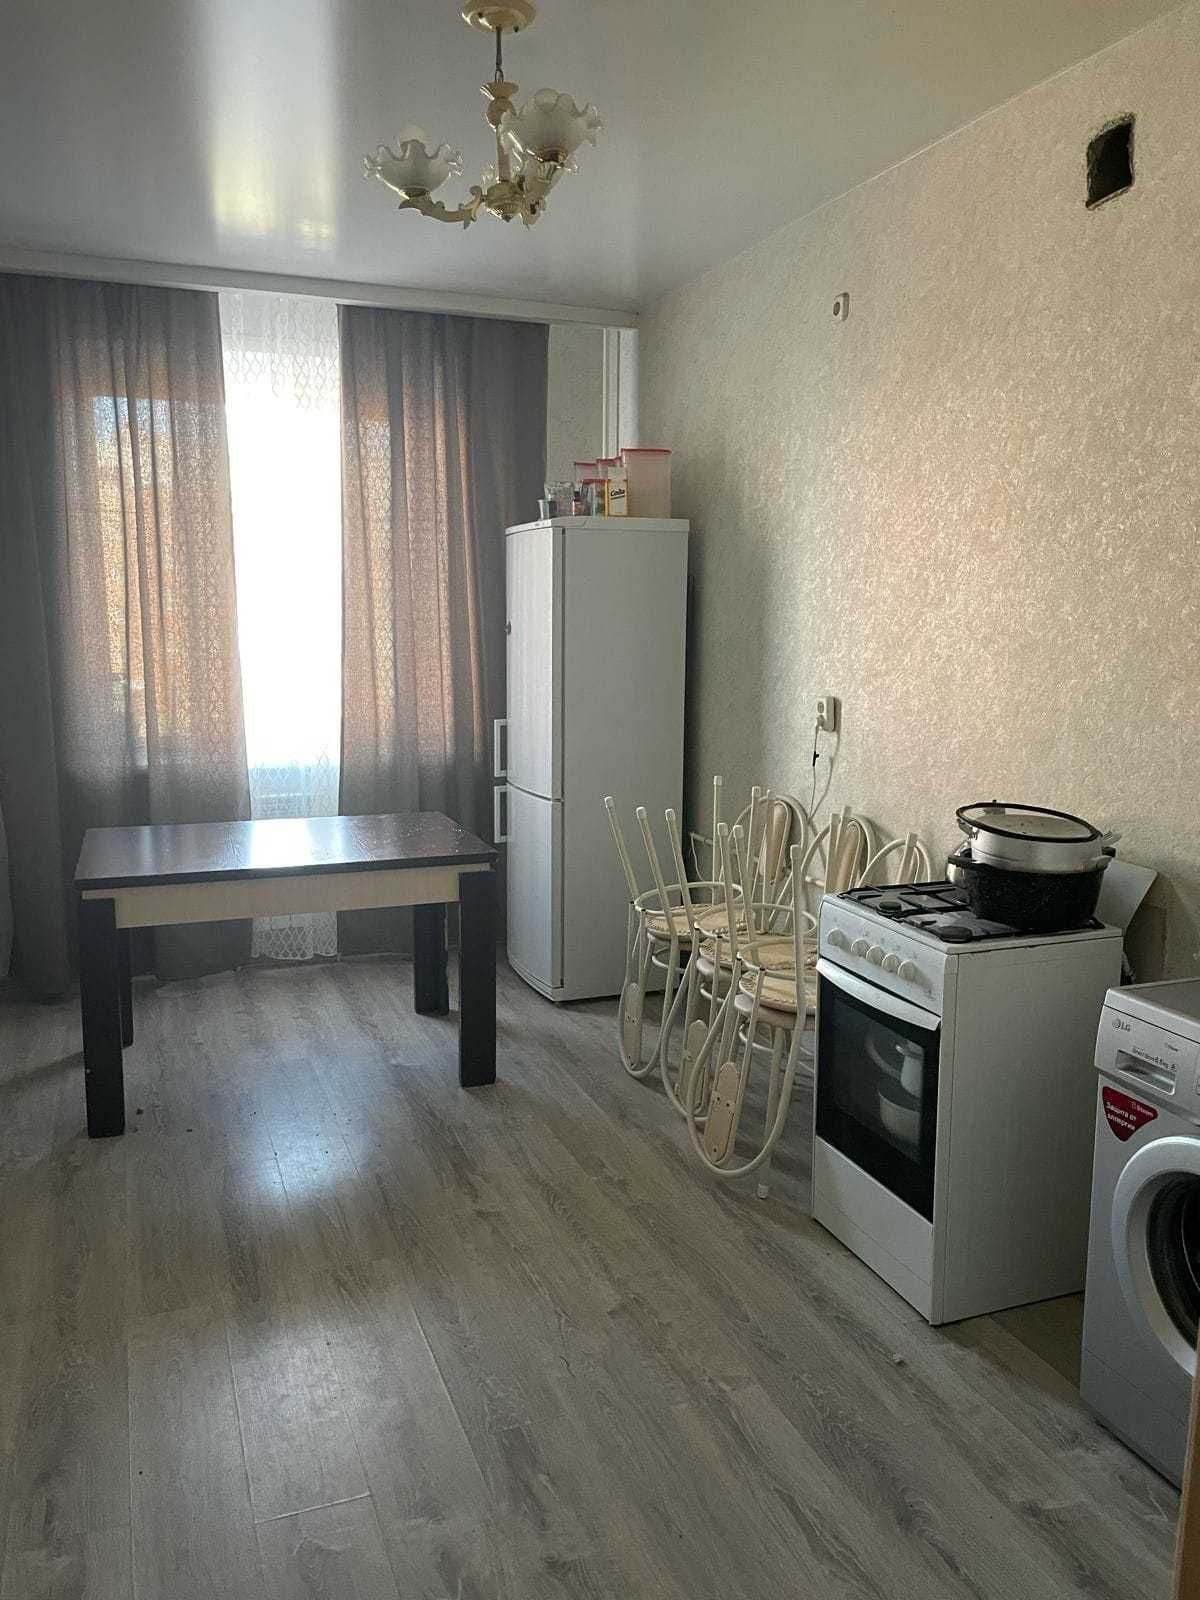 Продам 2-х комнатную квартиру в Алтын Армане на 3-м этаже 66 кв.м.